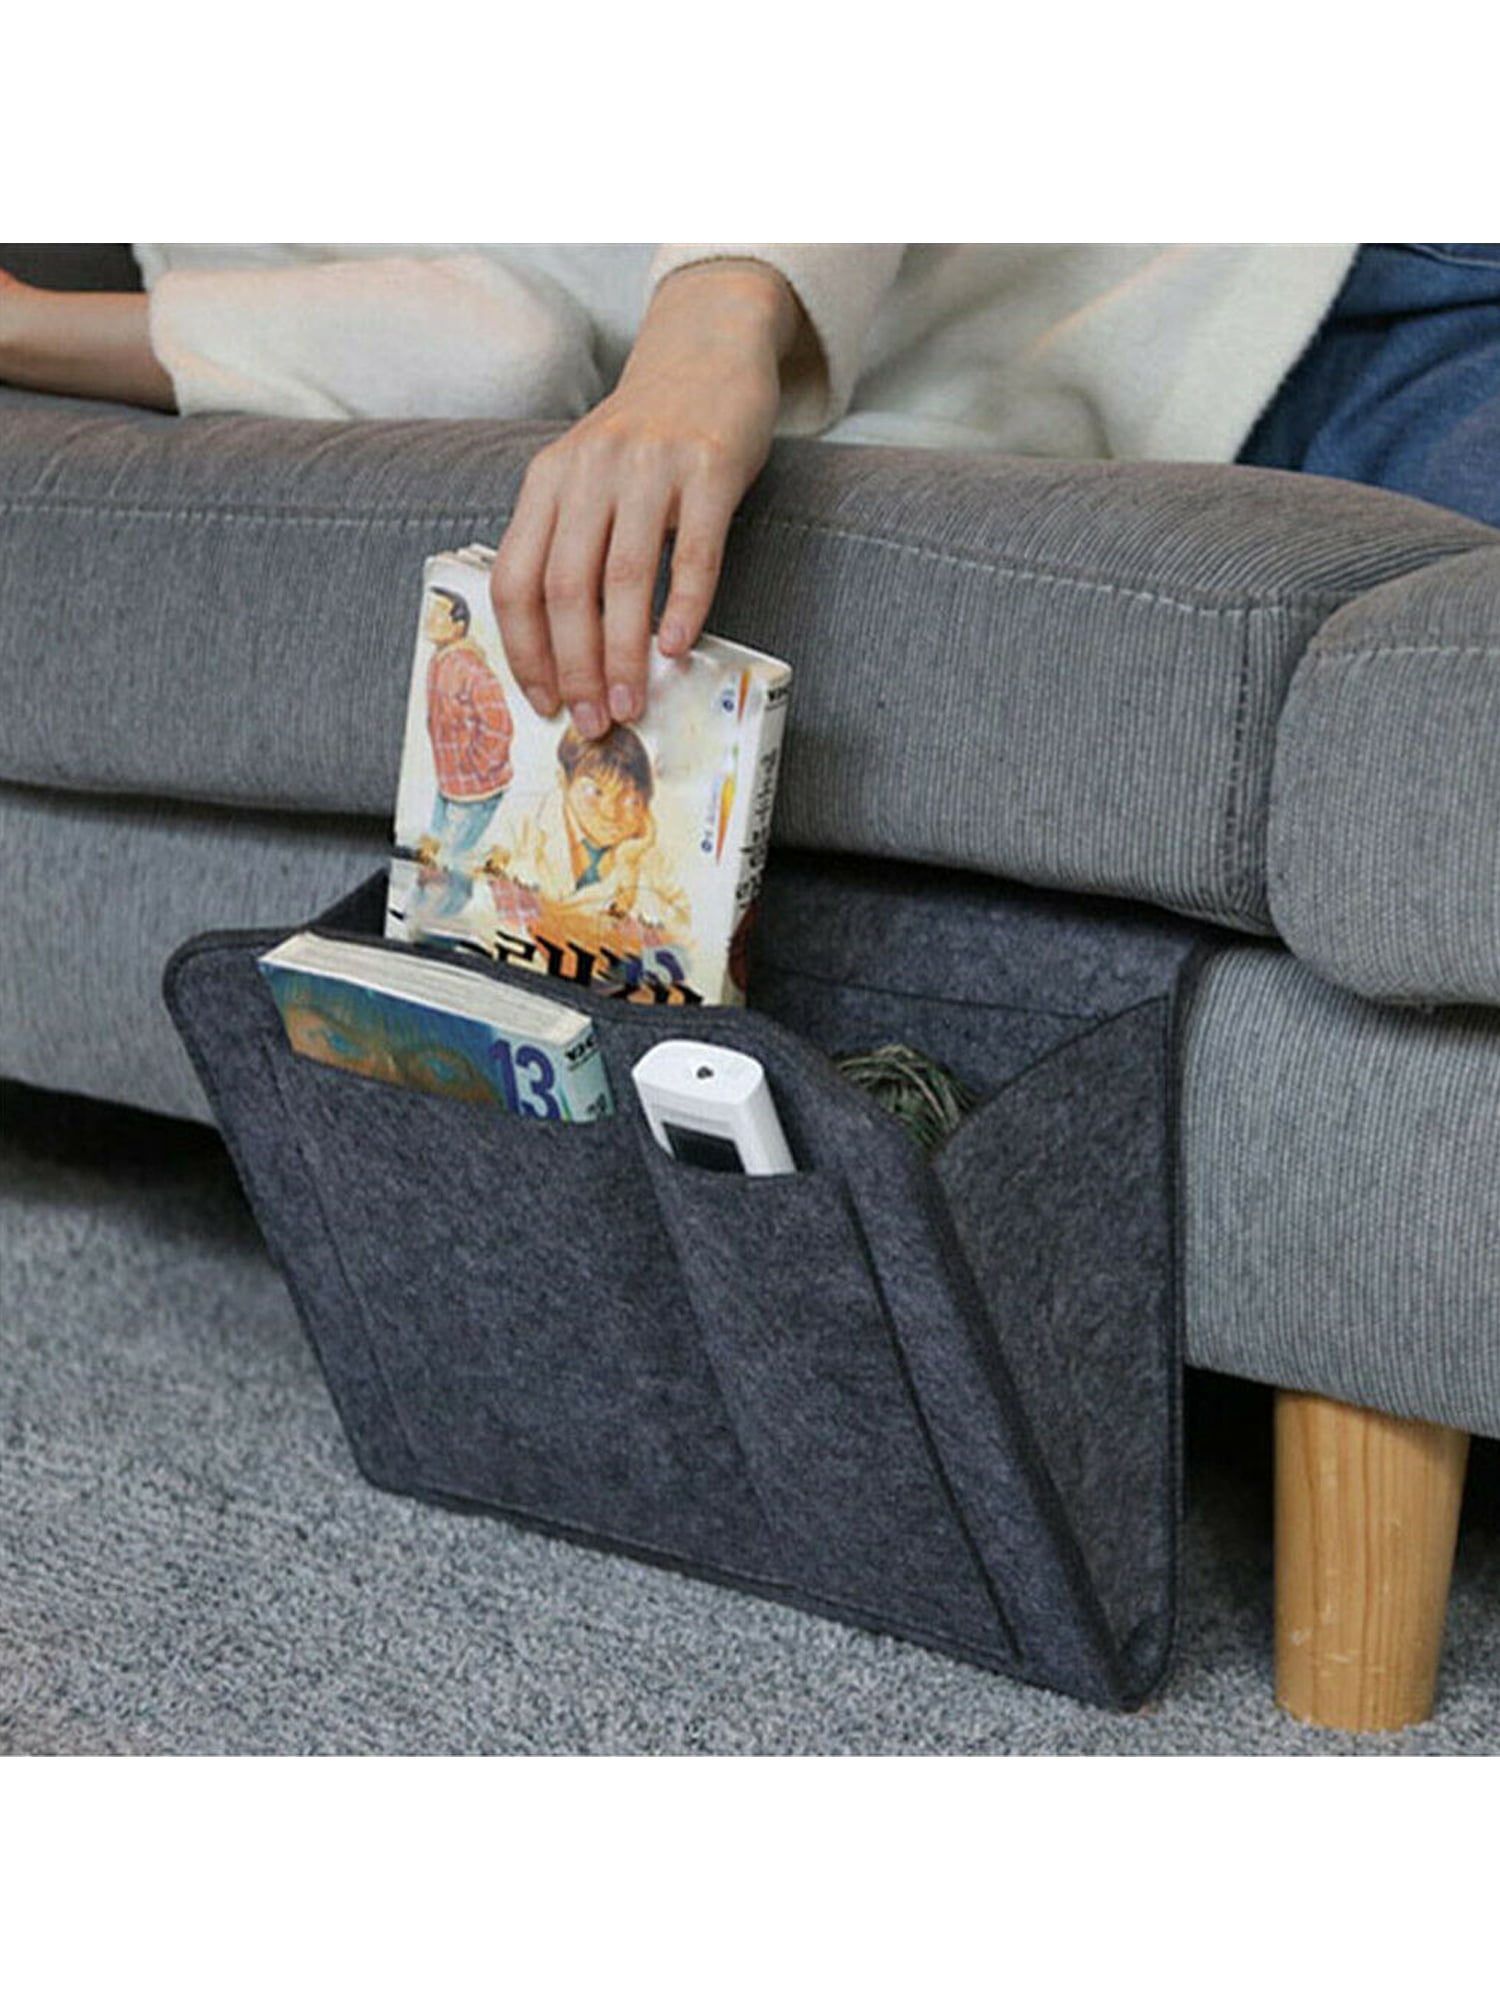 Felt Sofa Couch Organizer Bedside Caddy Bed Storage Pocket Hanging Holder Bag F 